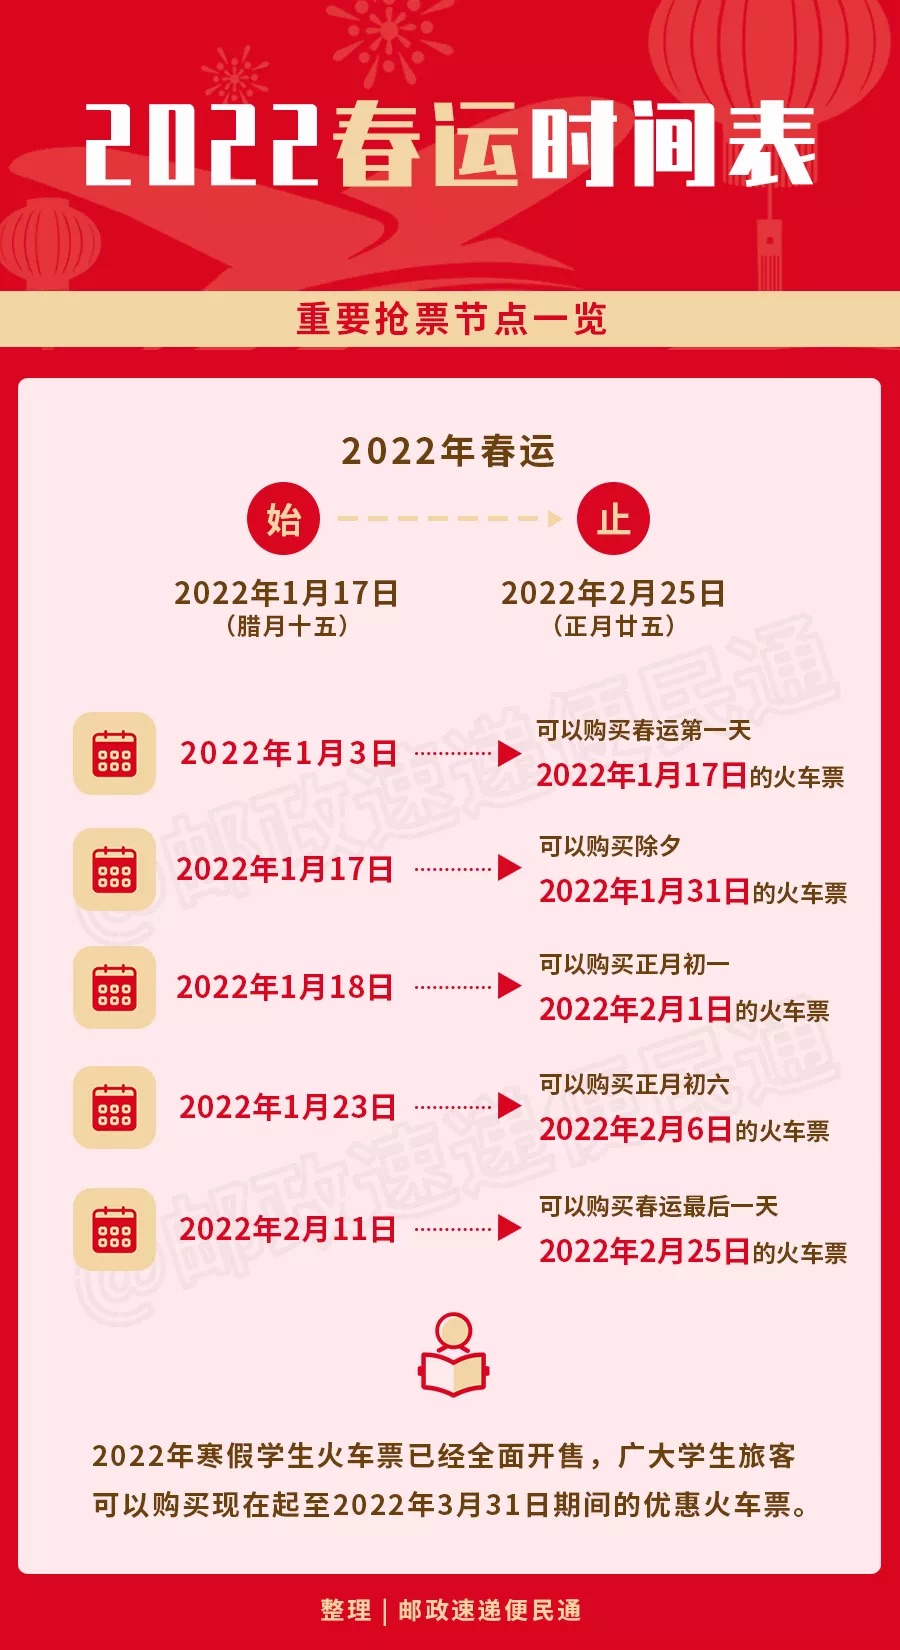 安九高铁将于12月30日正式通车